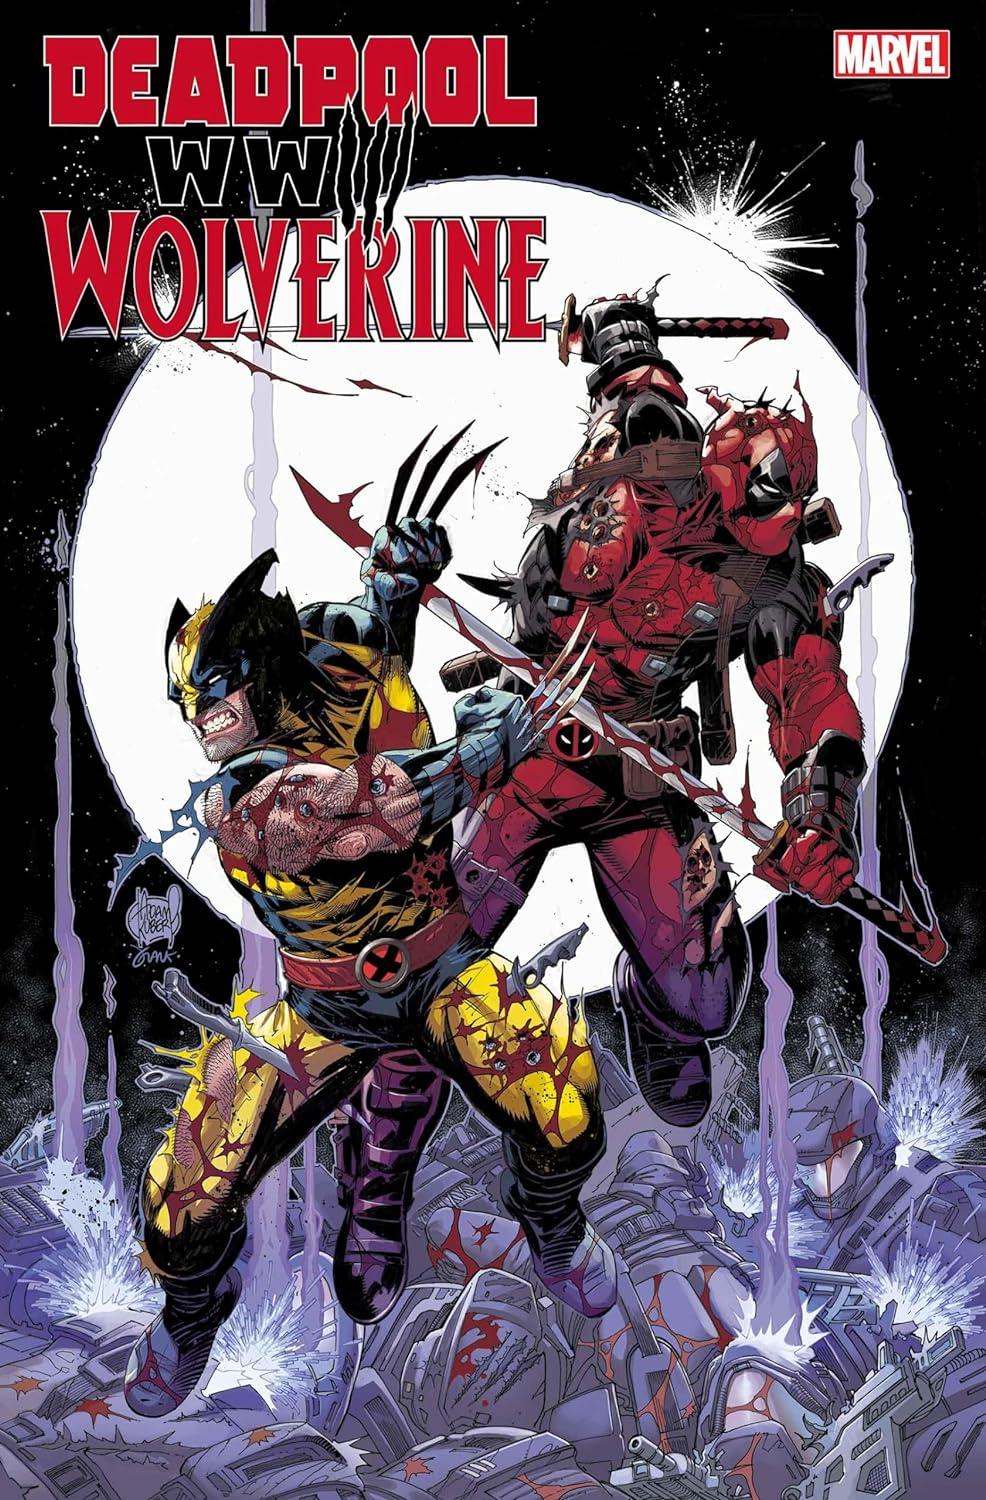 Deadpool/Wolverine: WWIII #1 cover art